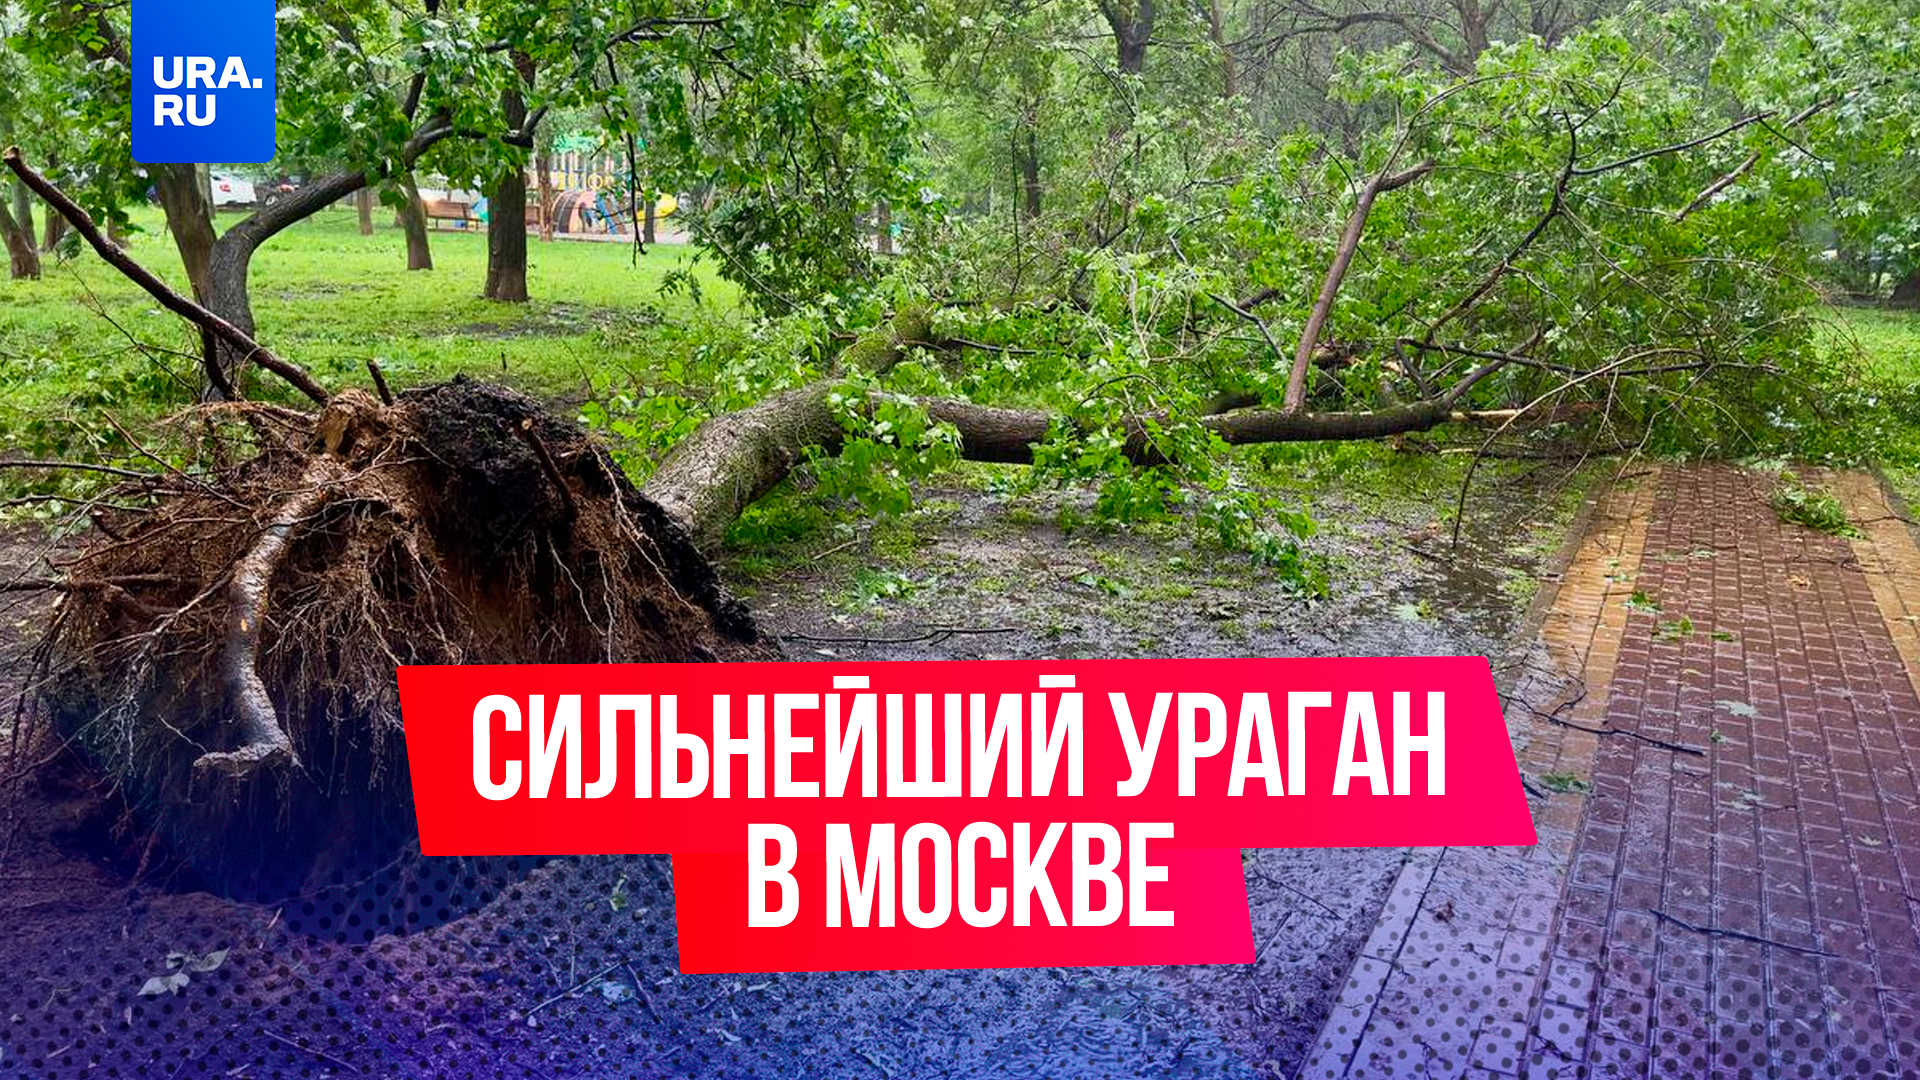 Человека насмерть придавило деревом: в Москве происходит самый настоящий апокалипсис